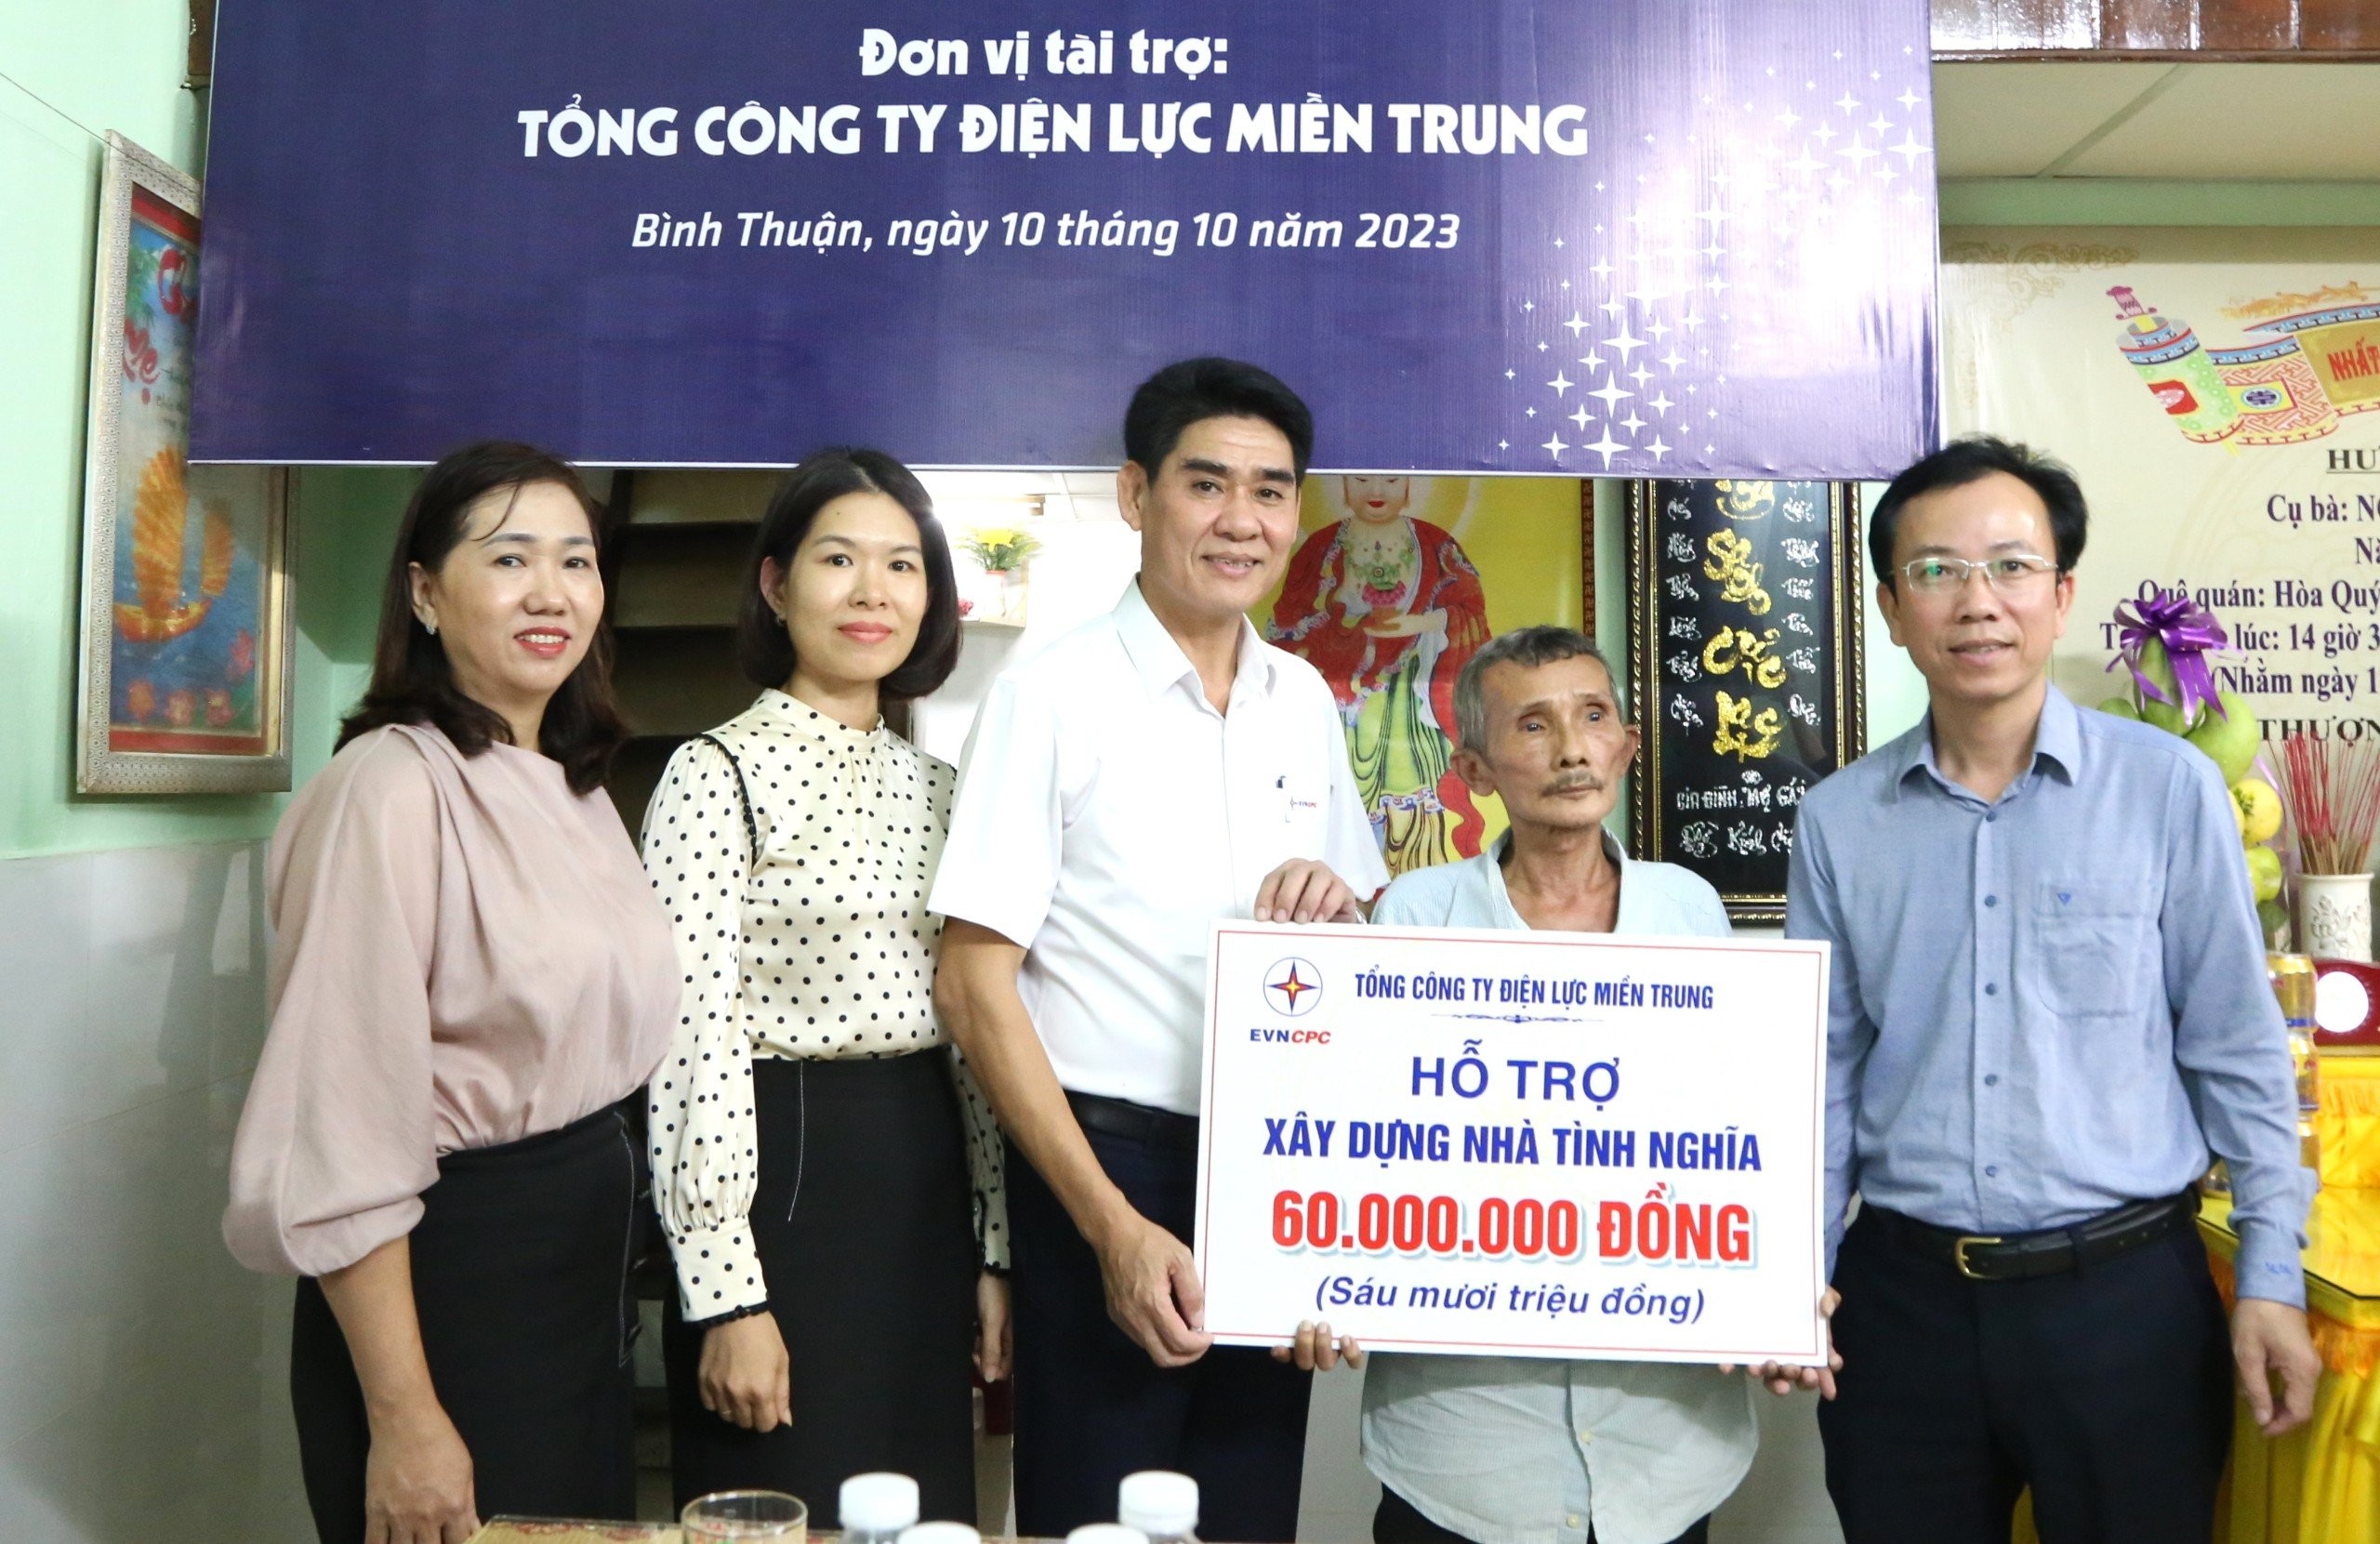 Tổng công ty Điện lực miền Trung hỗ trợ xây dựng nhà đại đoàn kết cho hộ gia đình bà Nguyễn Thị Thao tại TP. Đà Nẵng.